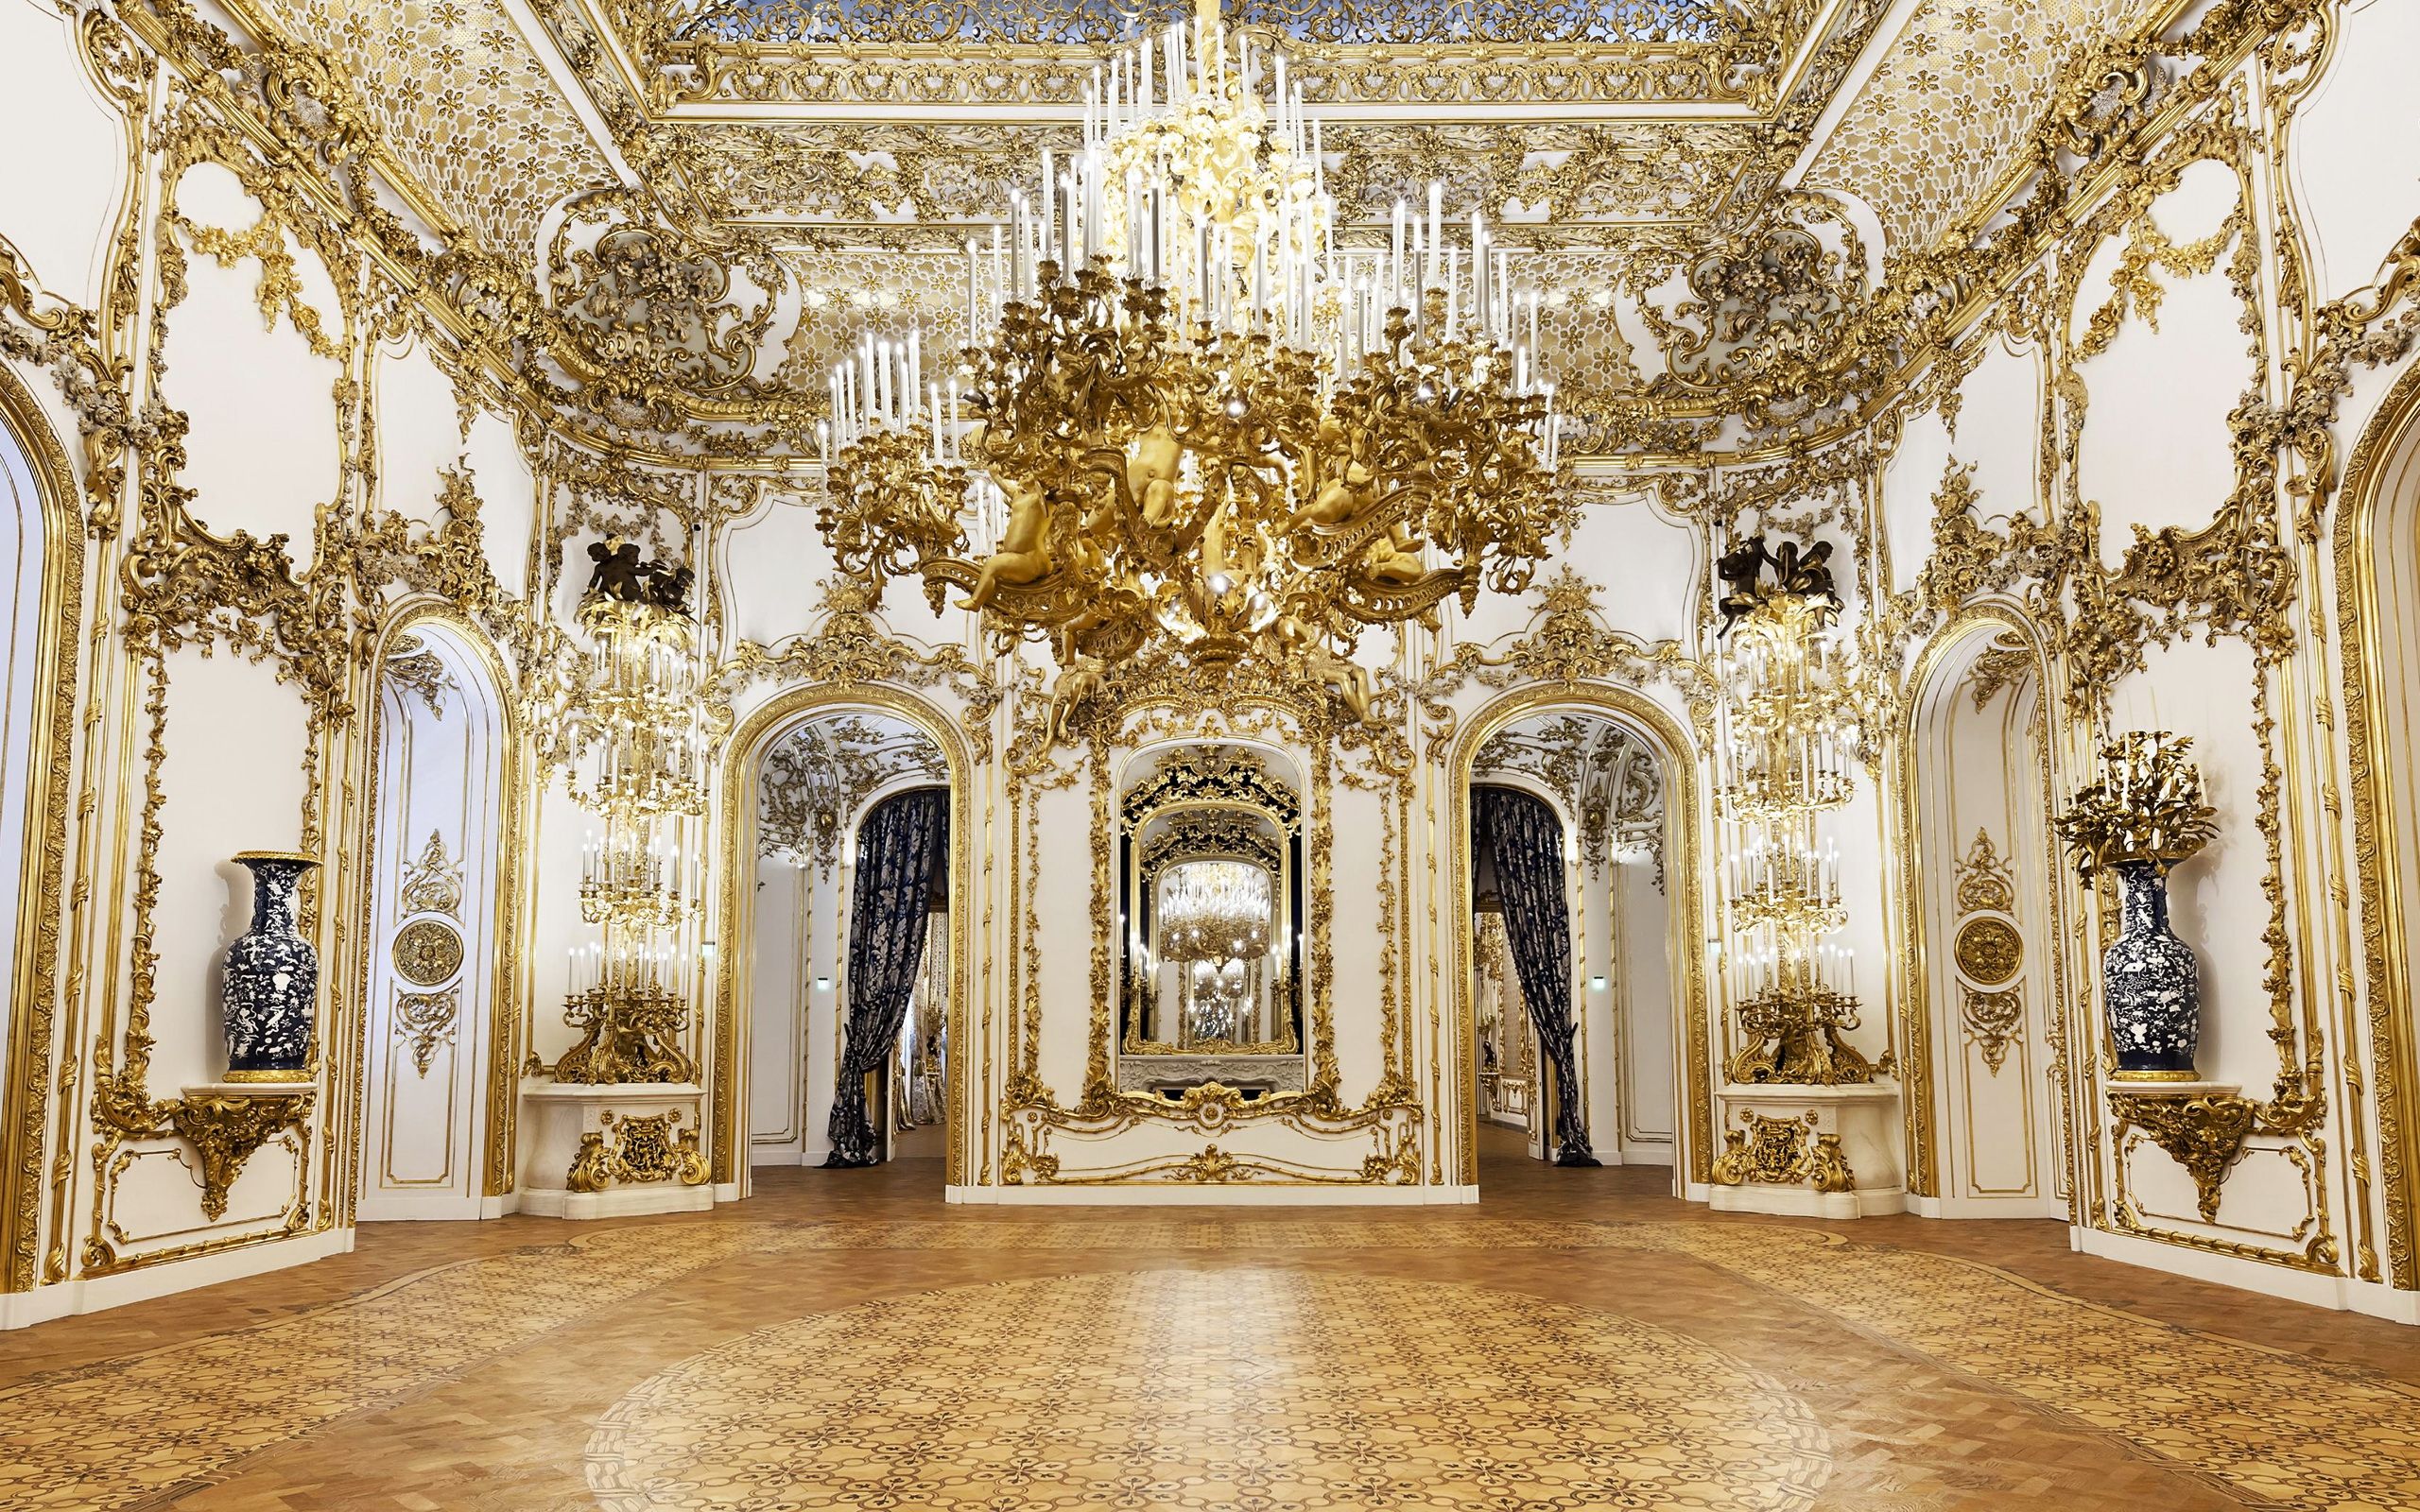 Download wallpaper Rococo interior, Luxurious interior, classic